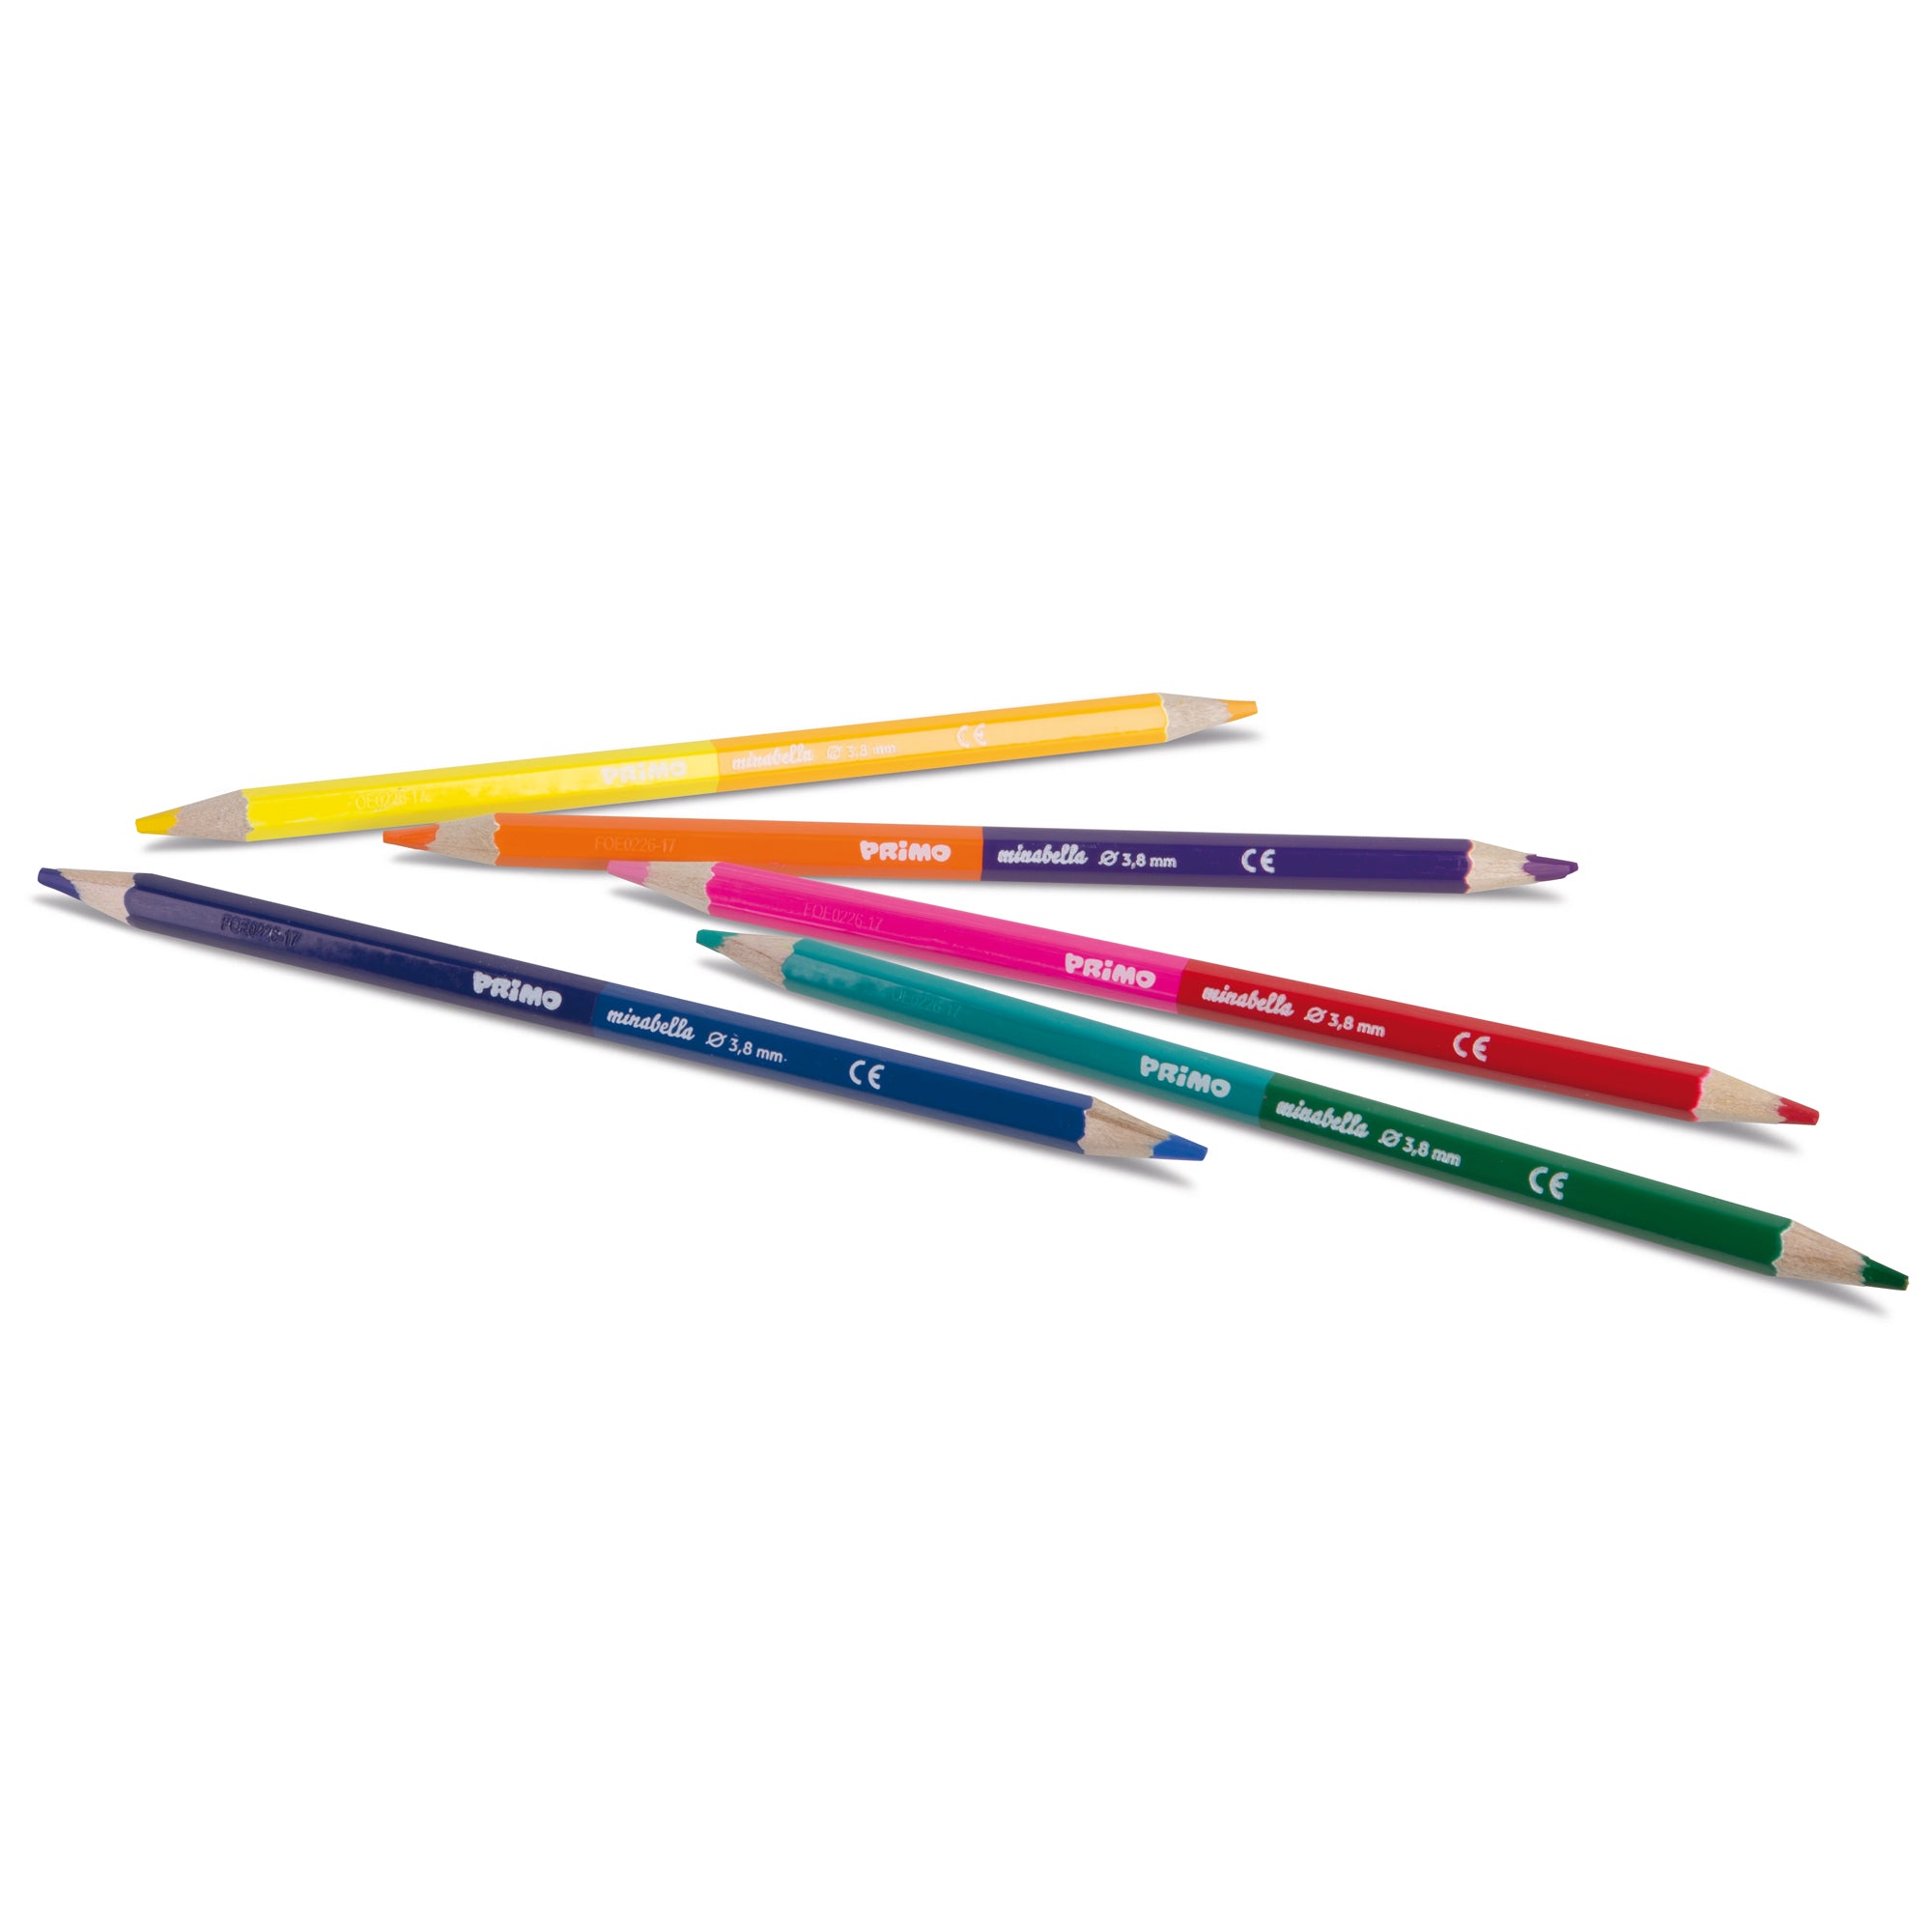 primo-morocolor-astuccio-12-matite-doppiocolore-diam-3-8mm-minabella-primo